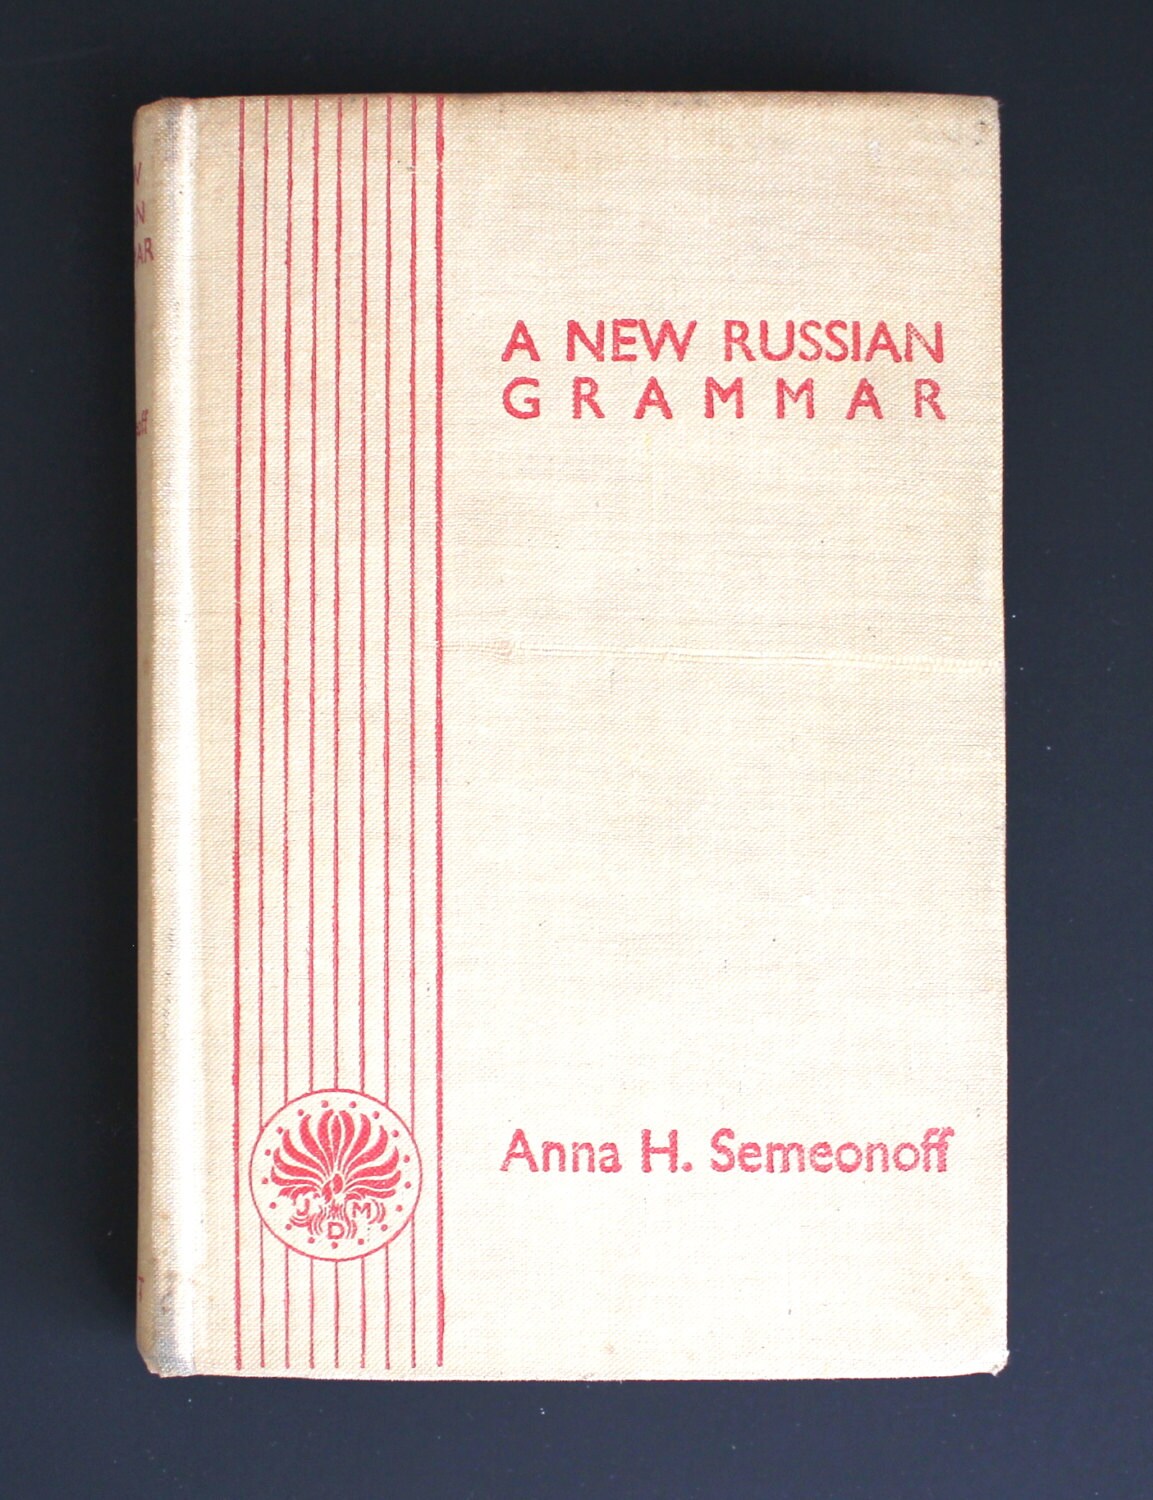 Whoa This Russian Grammar Book 41